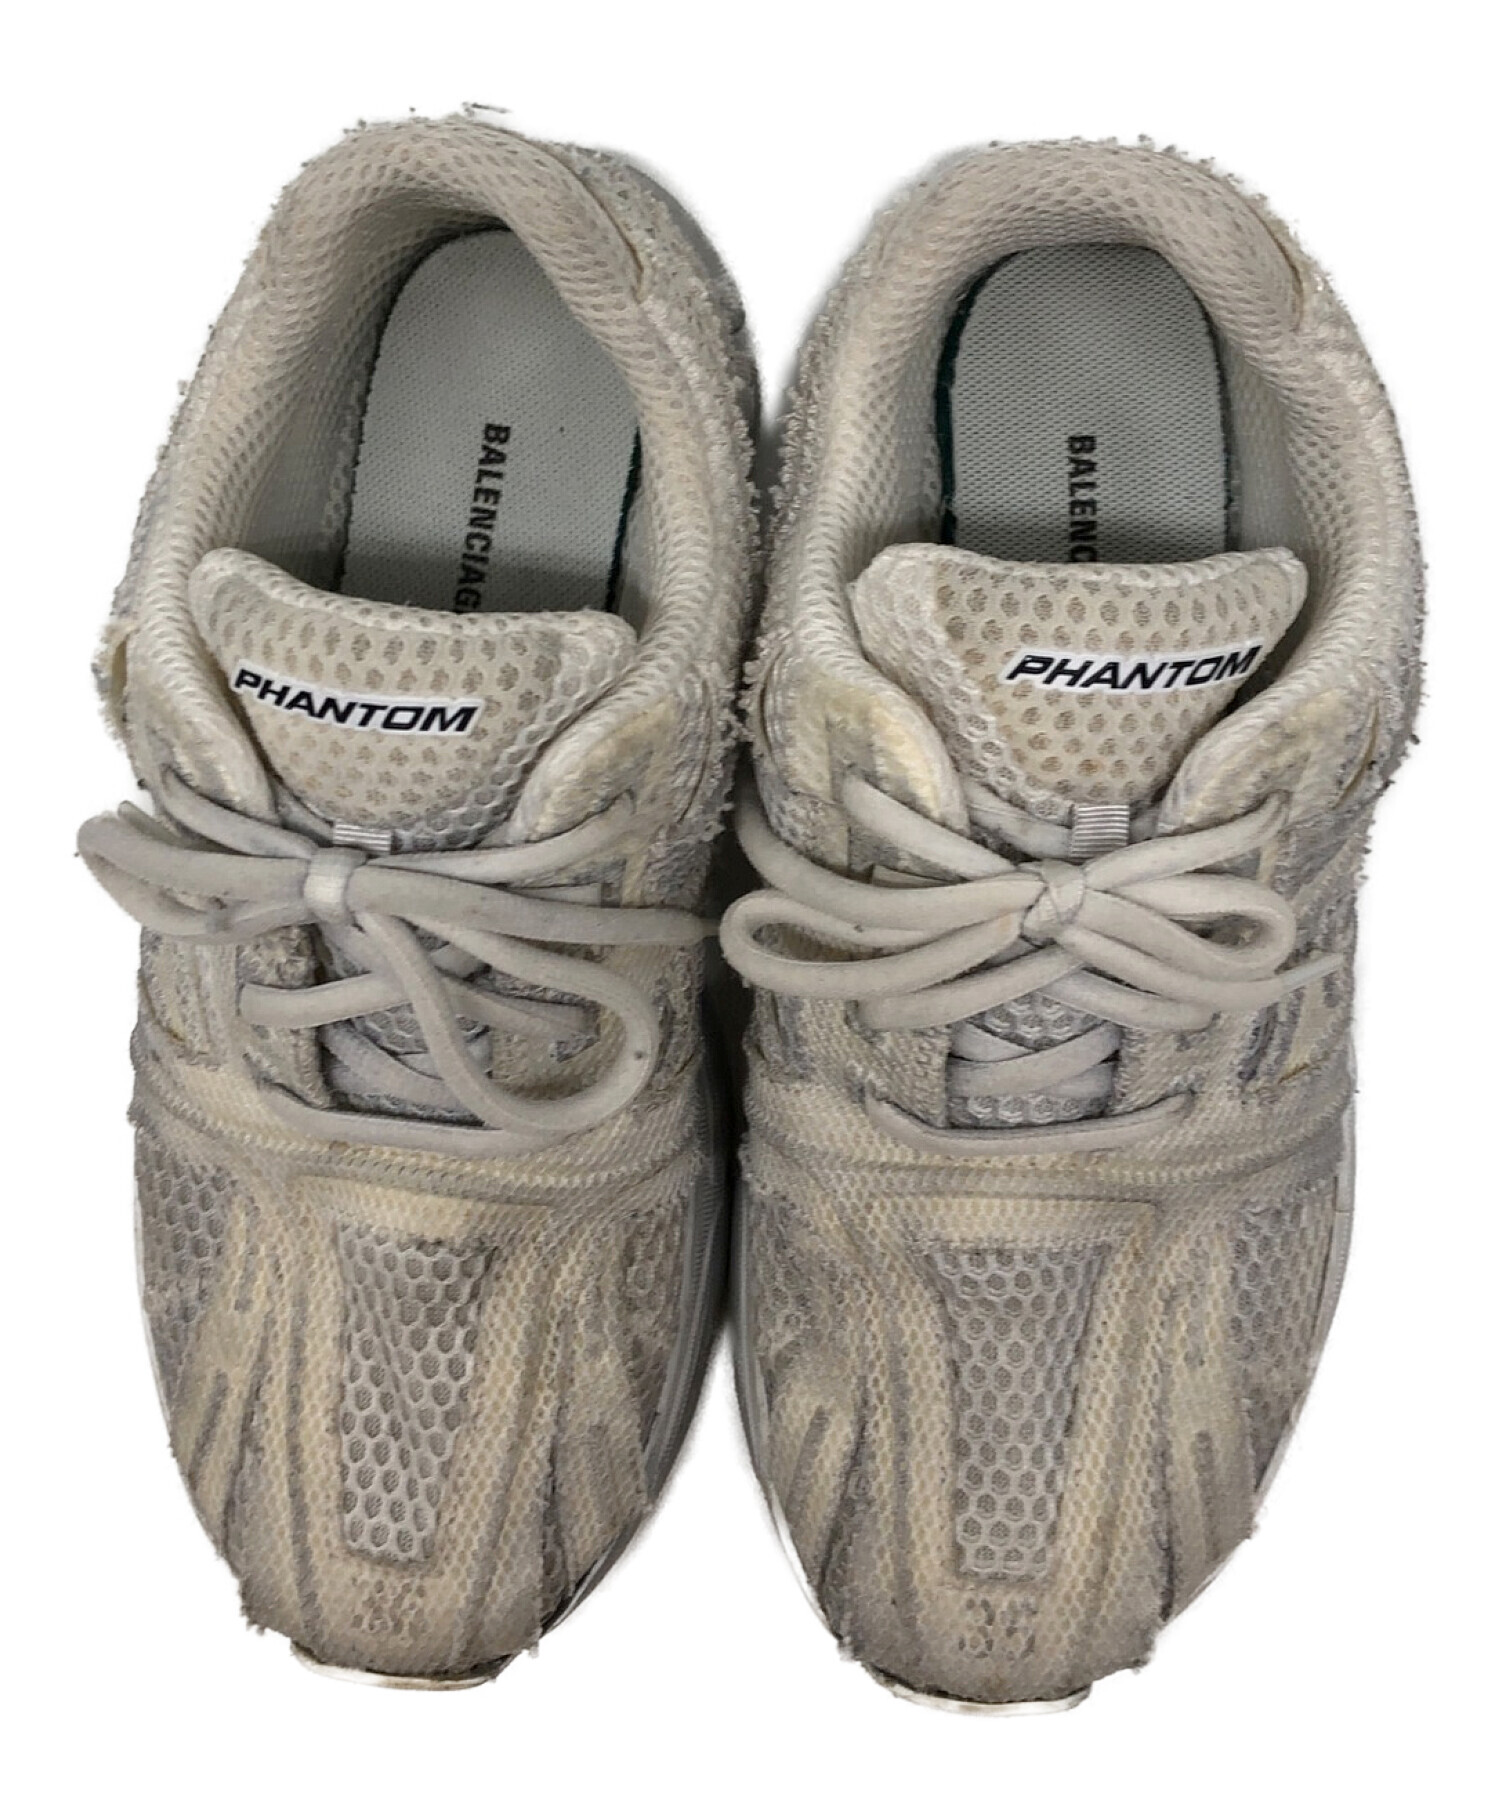 日本公式サイト直販 バレンシアガ ファントムスニーカー - 靴